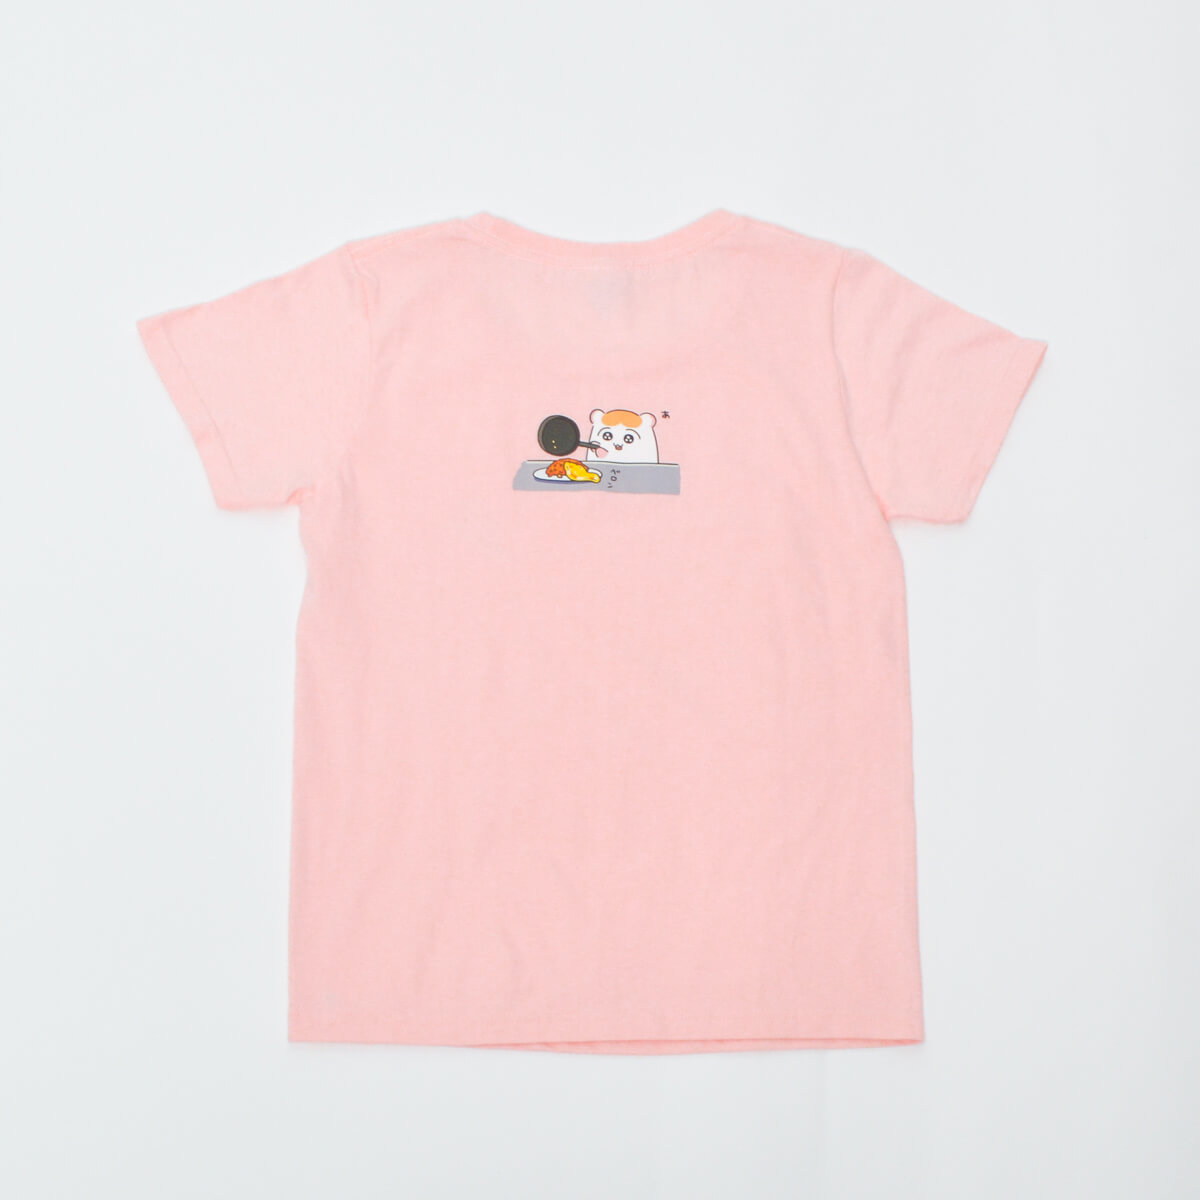 Tシャツ「ちこまる」ちこまるShock!/ベビーピンク